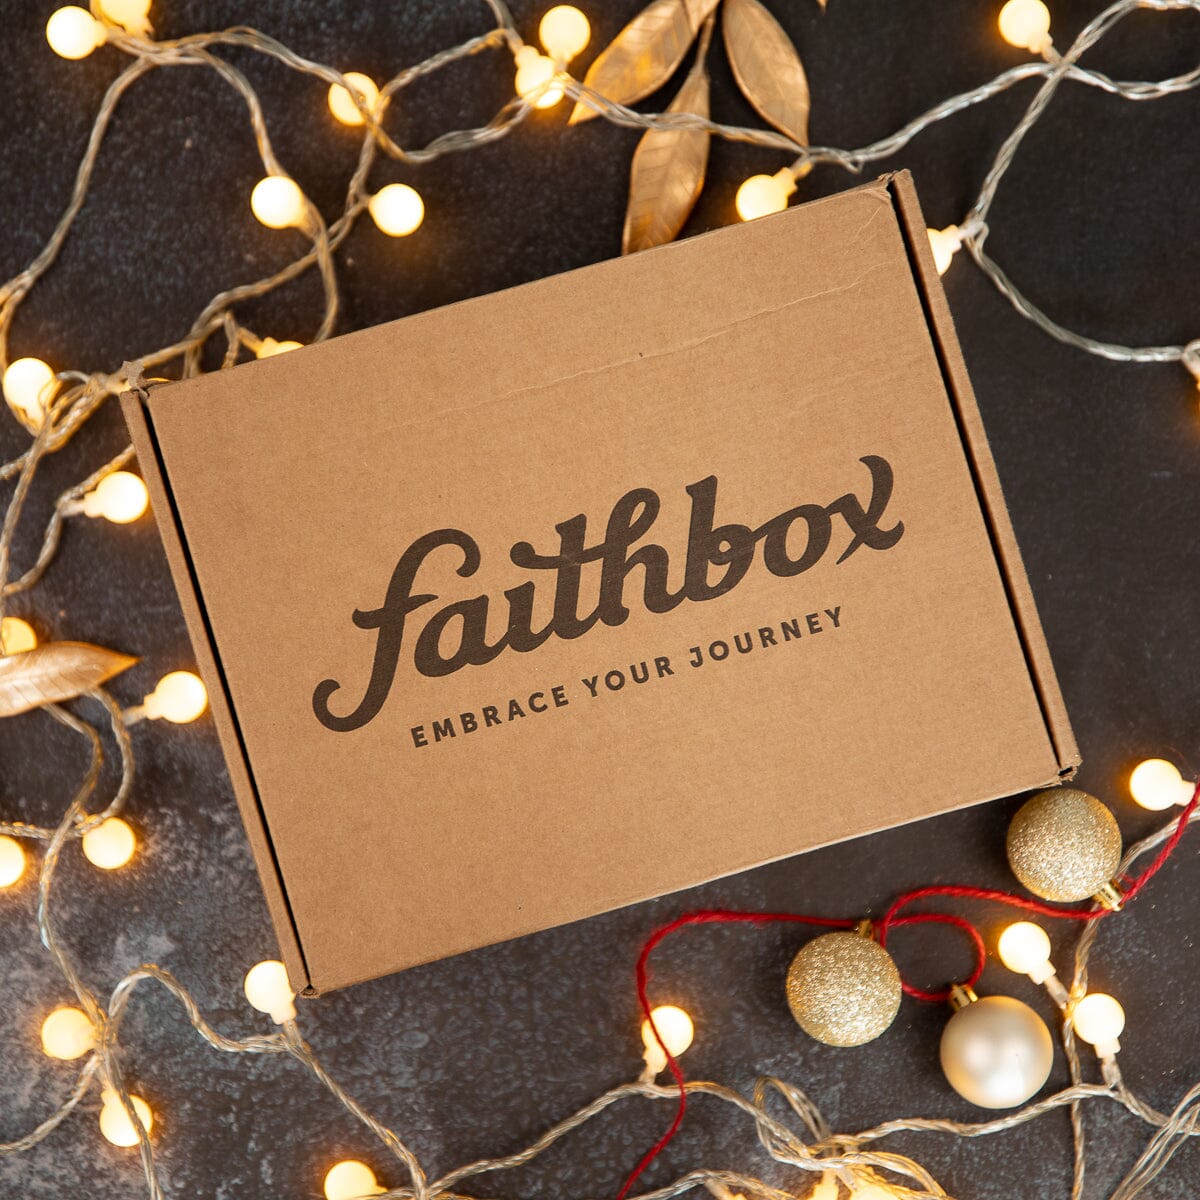 HOPE Faithbox